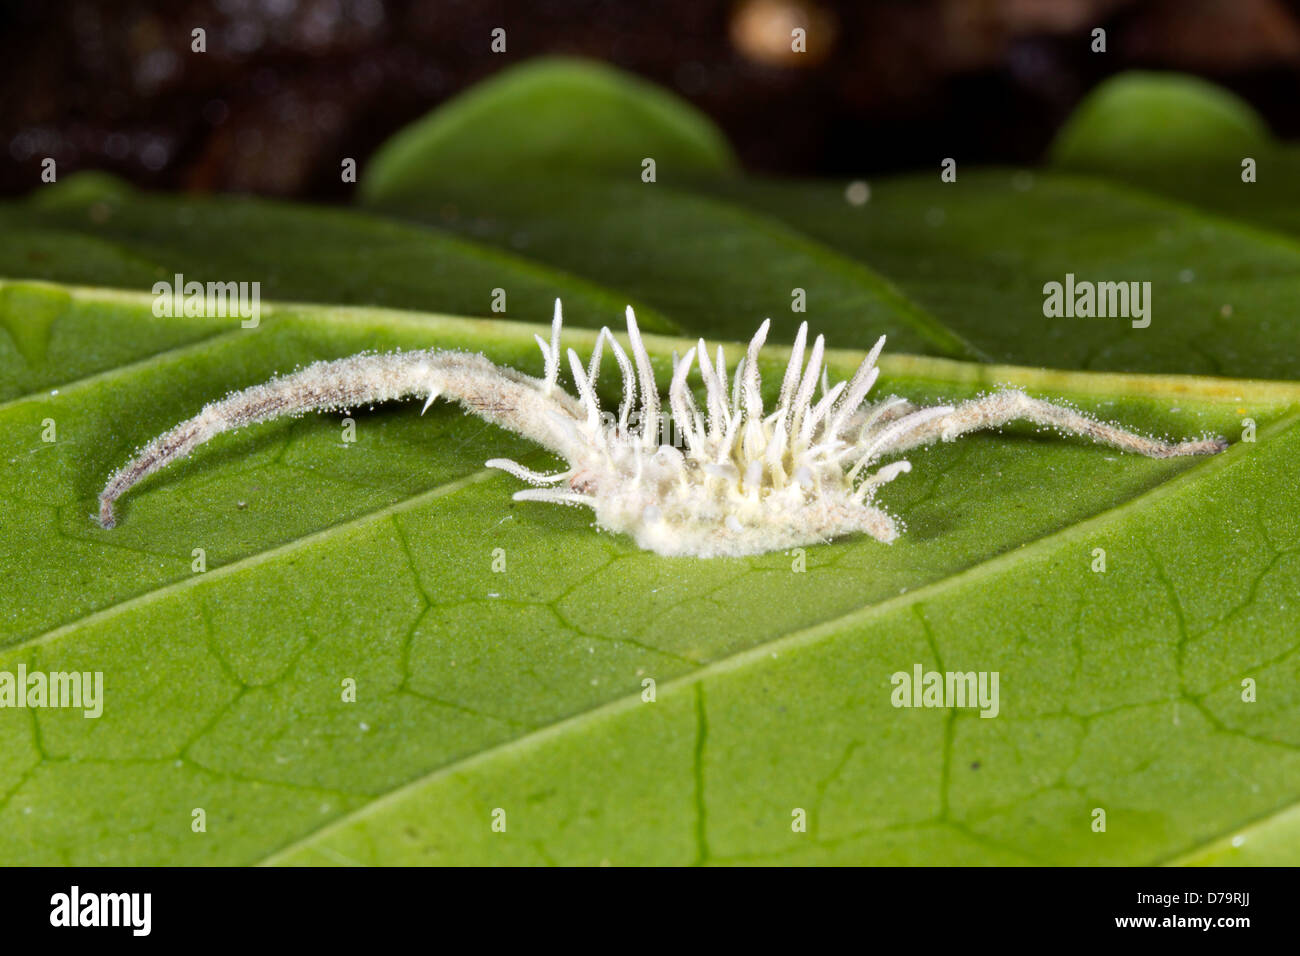 El hongo Cordyceps (Gibellula sp.) que infecta a una araña en el sotobosque de la selva, Ecuador Foto de stock